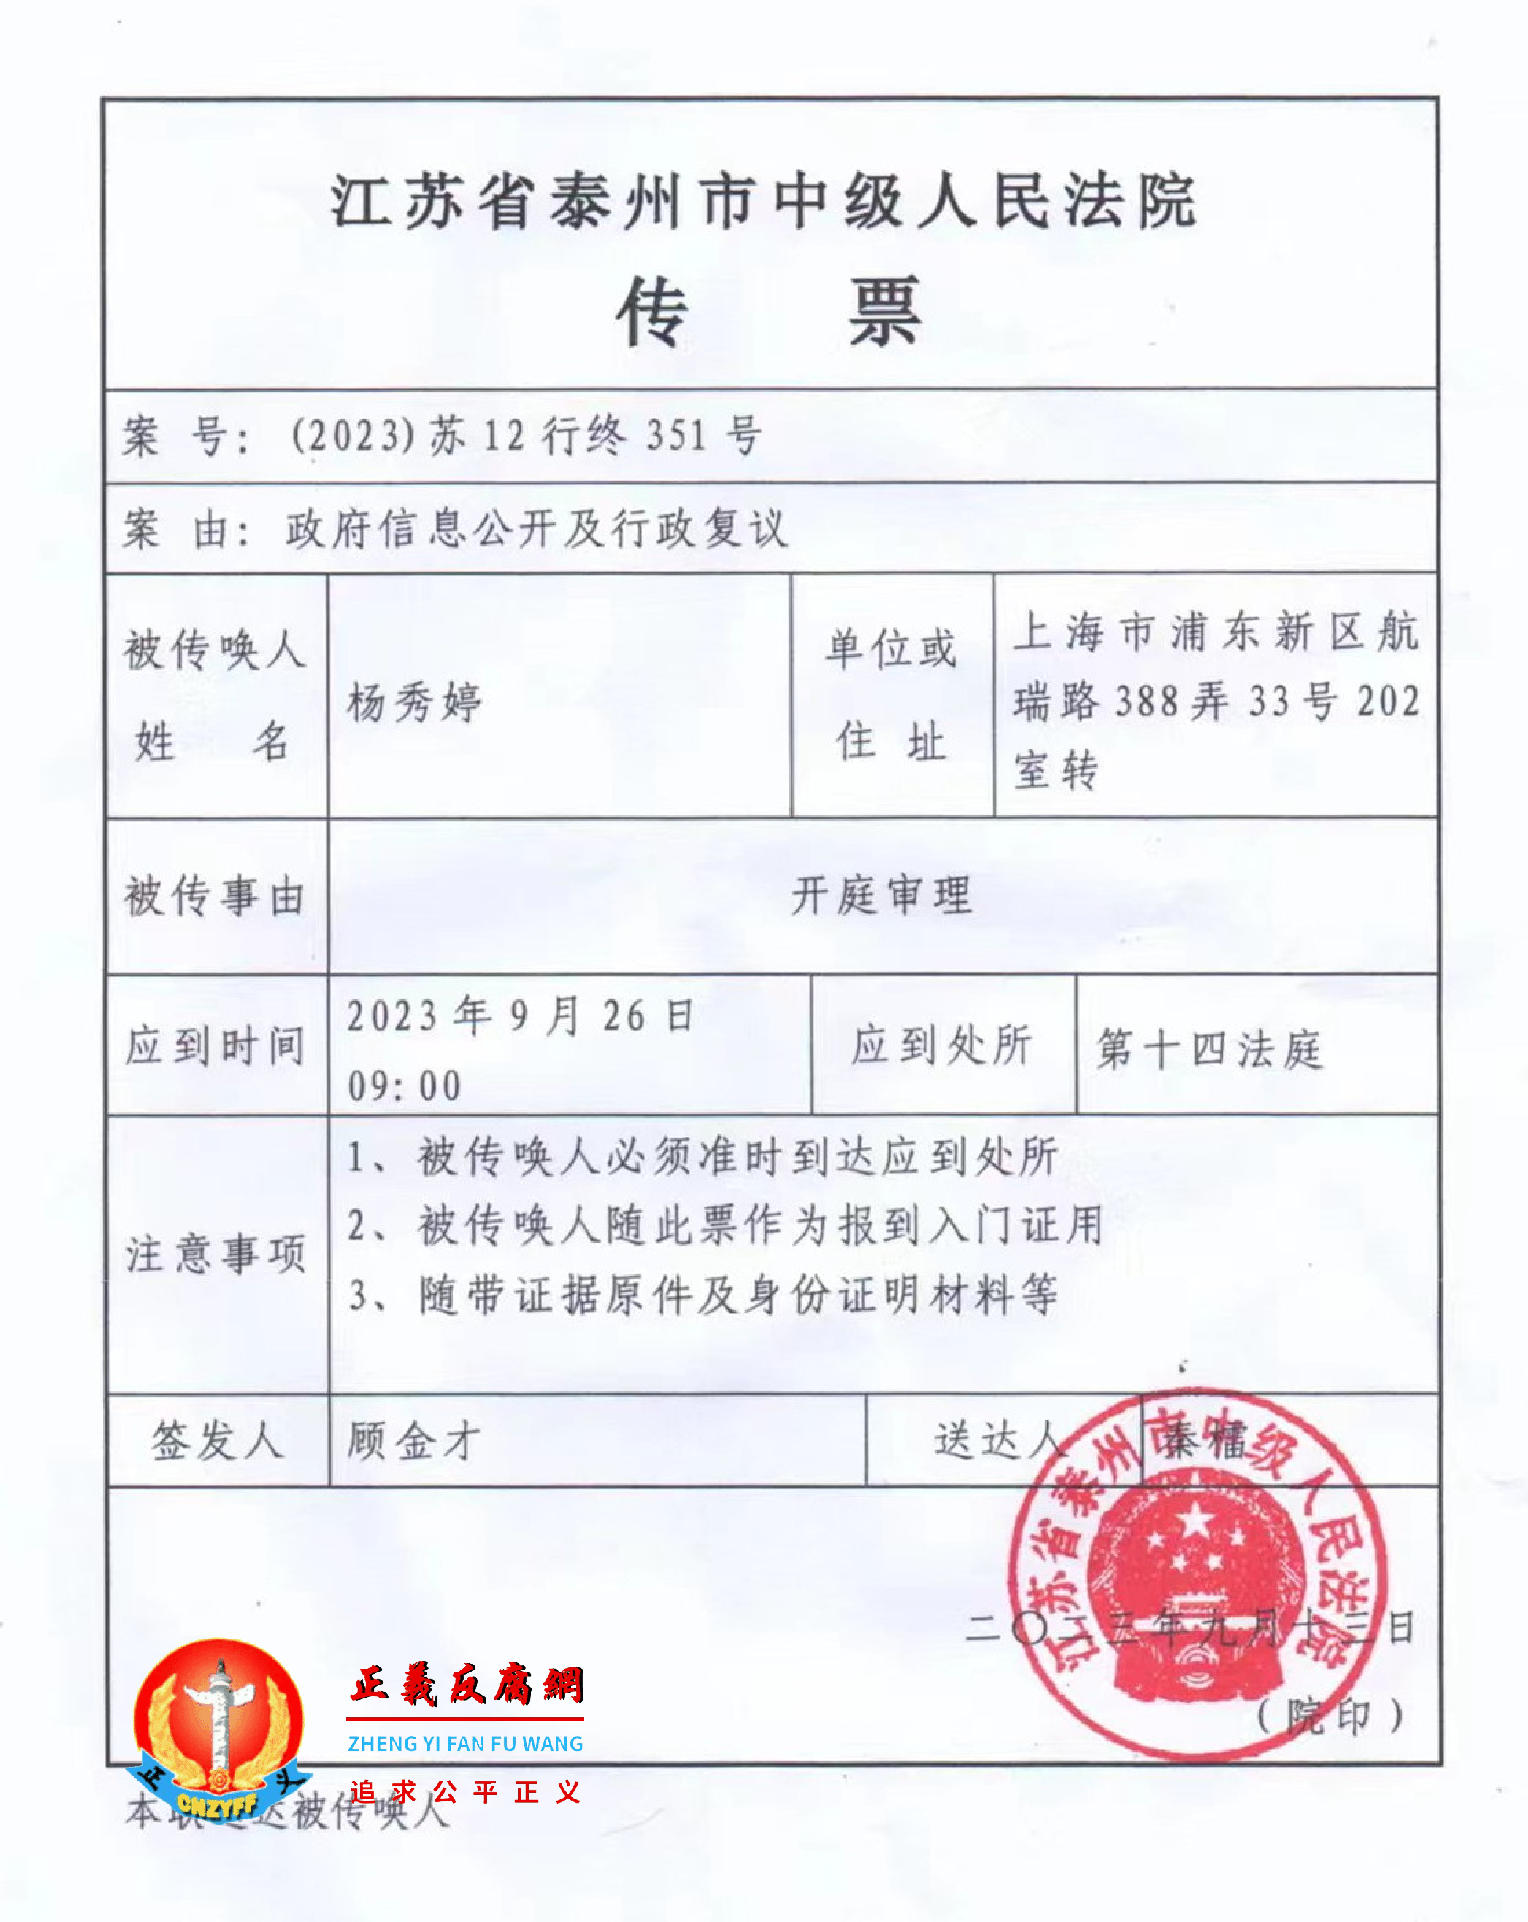 上海访民杨秀婷2023年9月26日的开庭通知书。.png